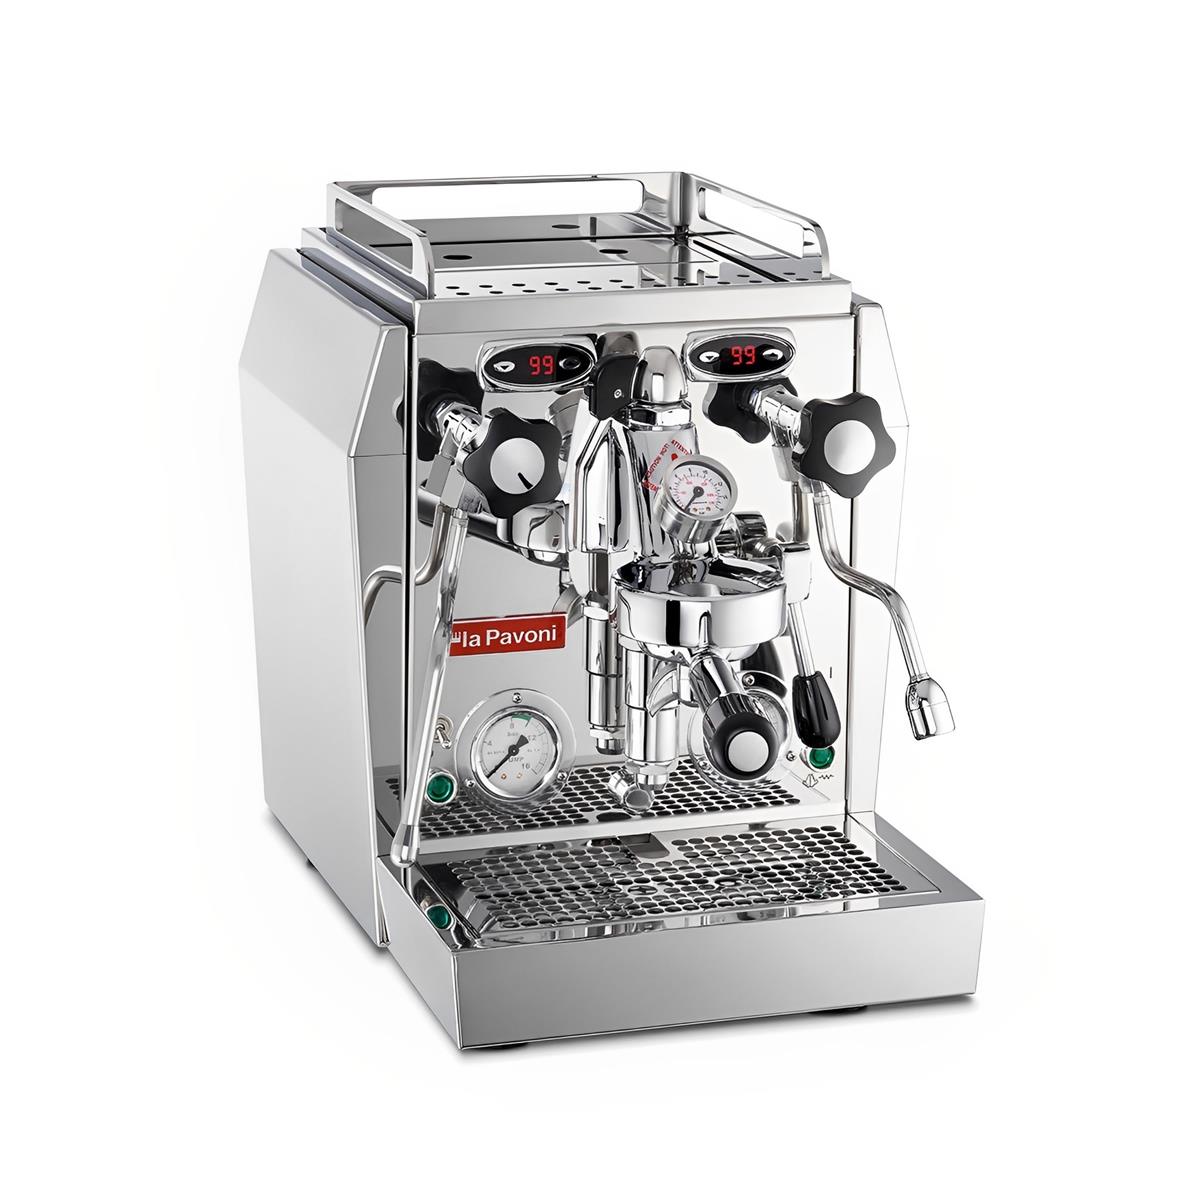 LA PAVONI - Botticelli SPECIALTY - Machine semi-professionnelle 230 V